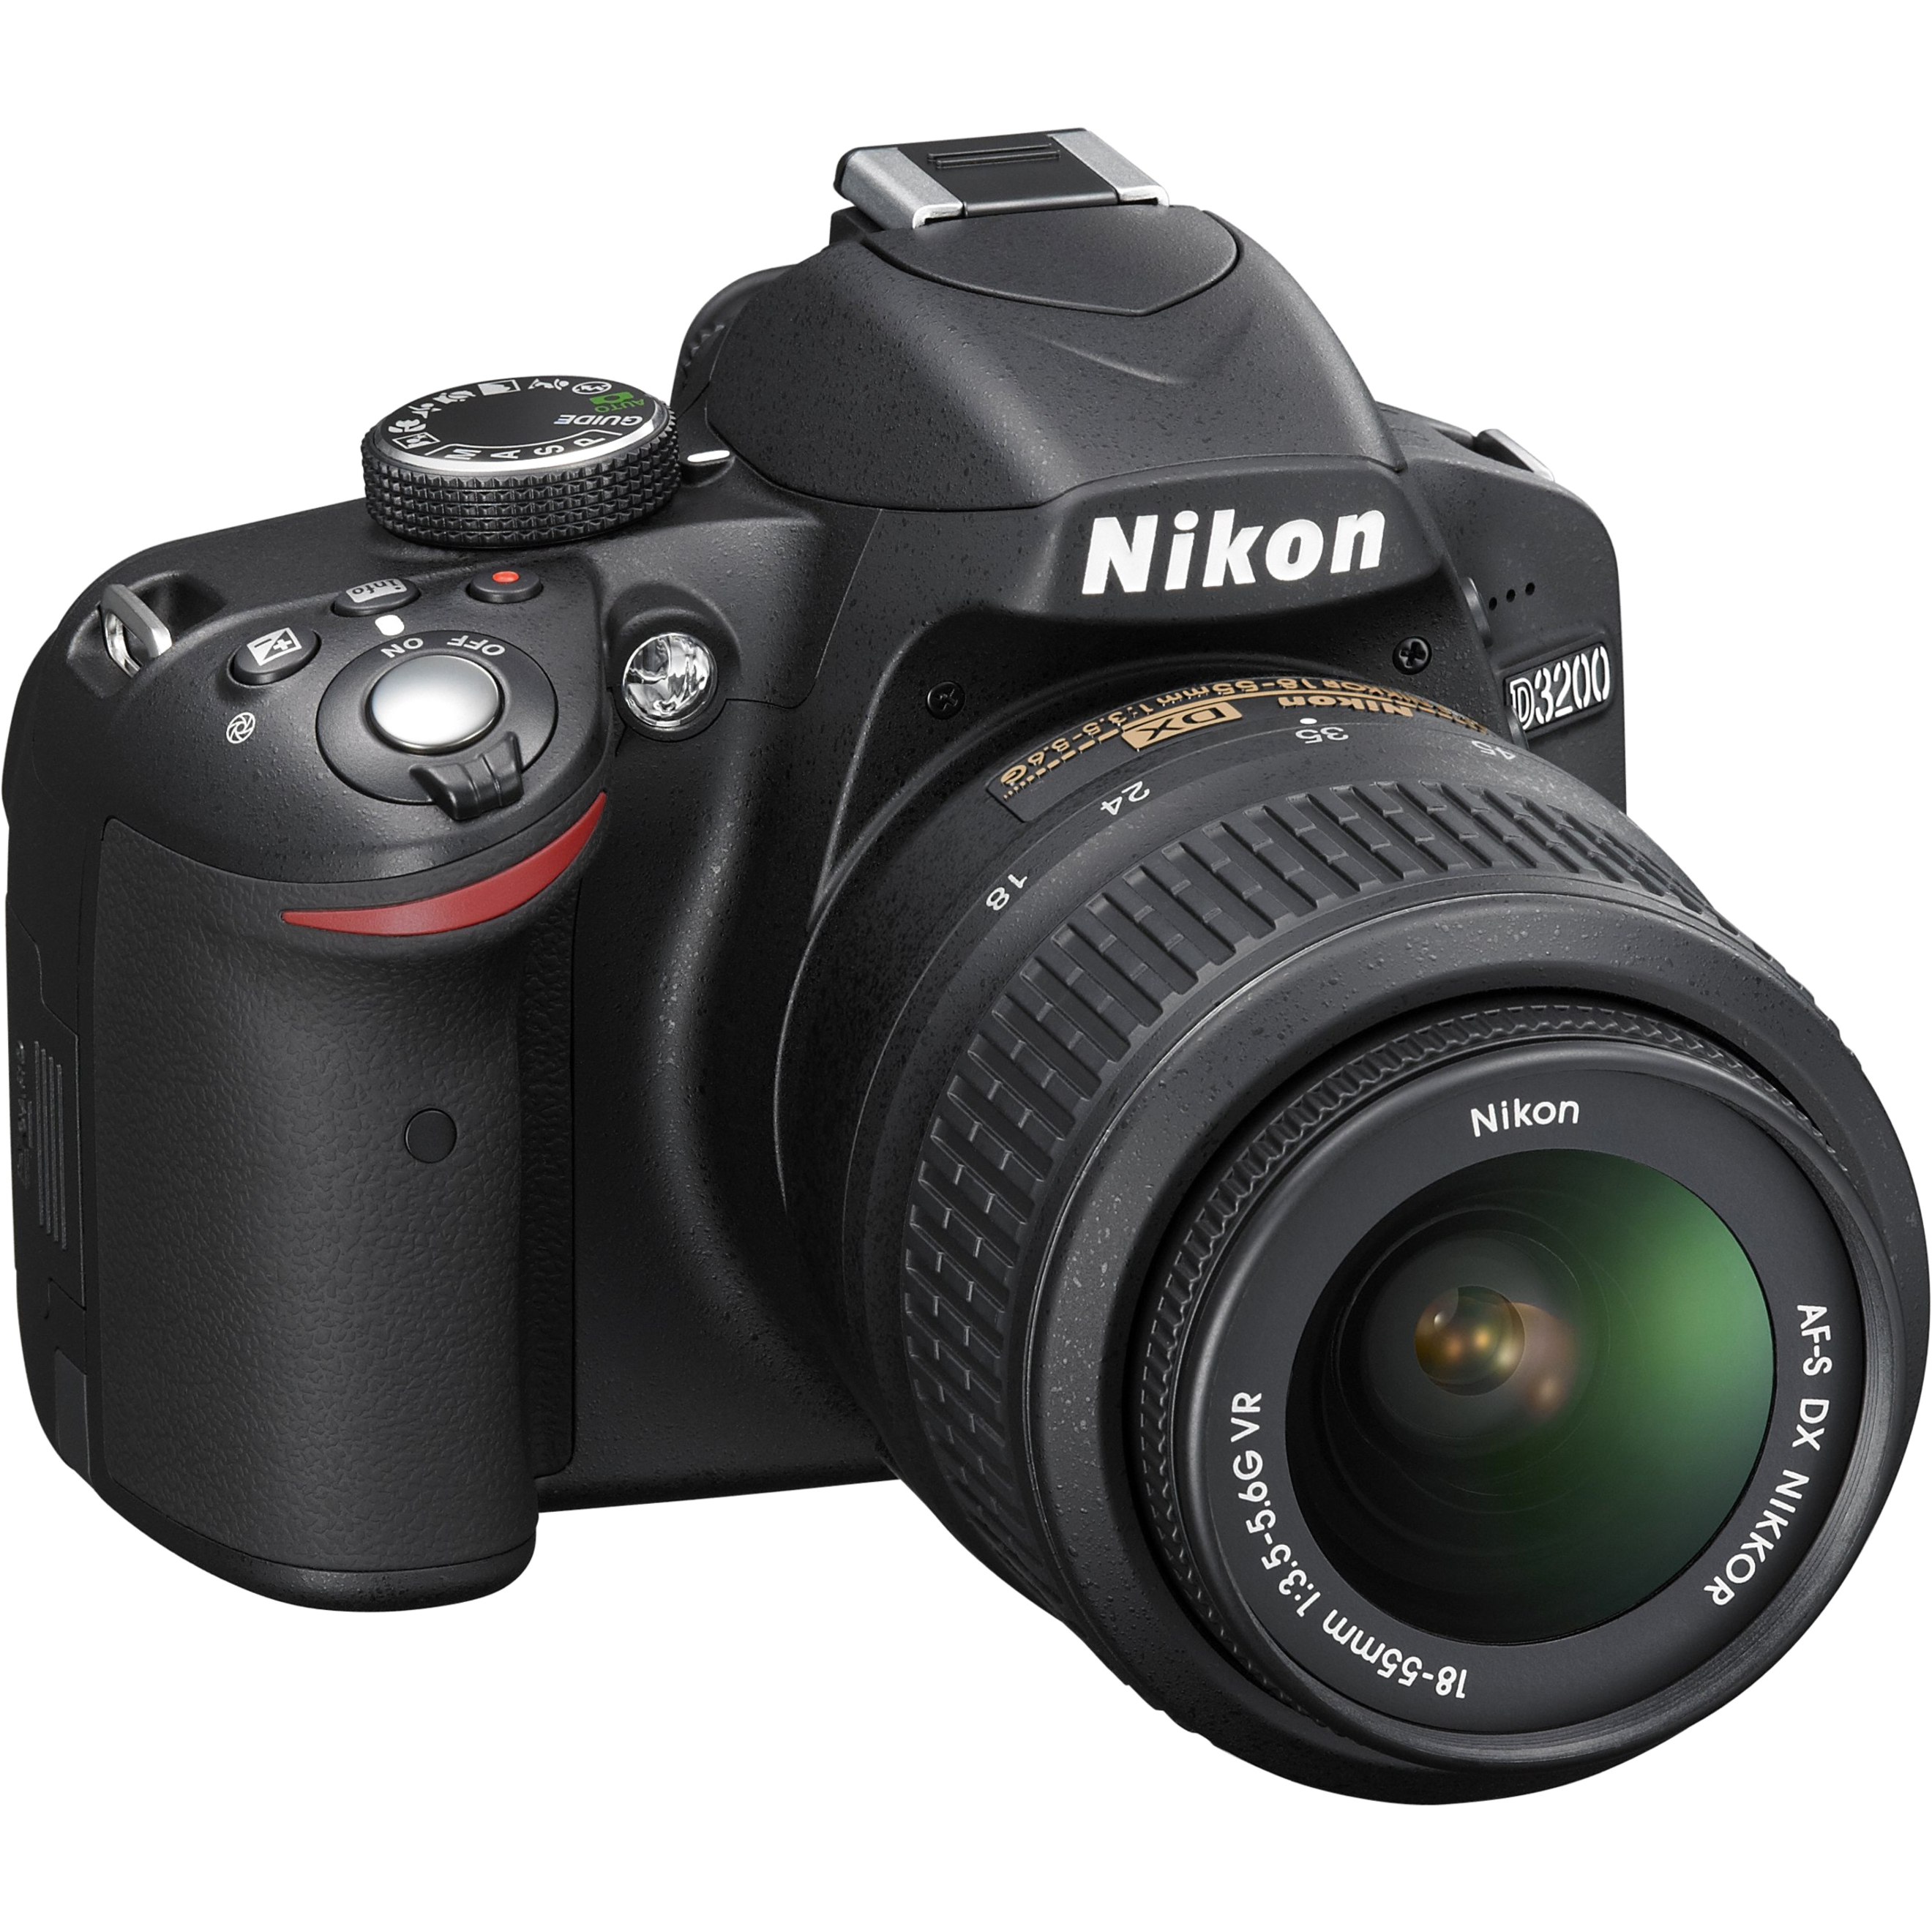 Nikon D3200 24.2 Megapixel Digital SLR Camera with Lens, 0.71", 2.17" (Lens 1), 2.17", 7.87" (Lens 2), Black - image 3 of 6